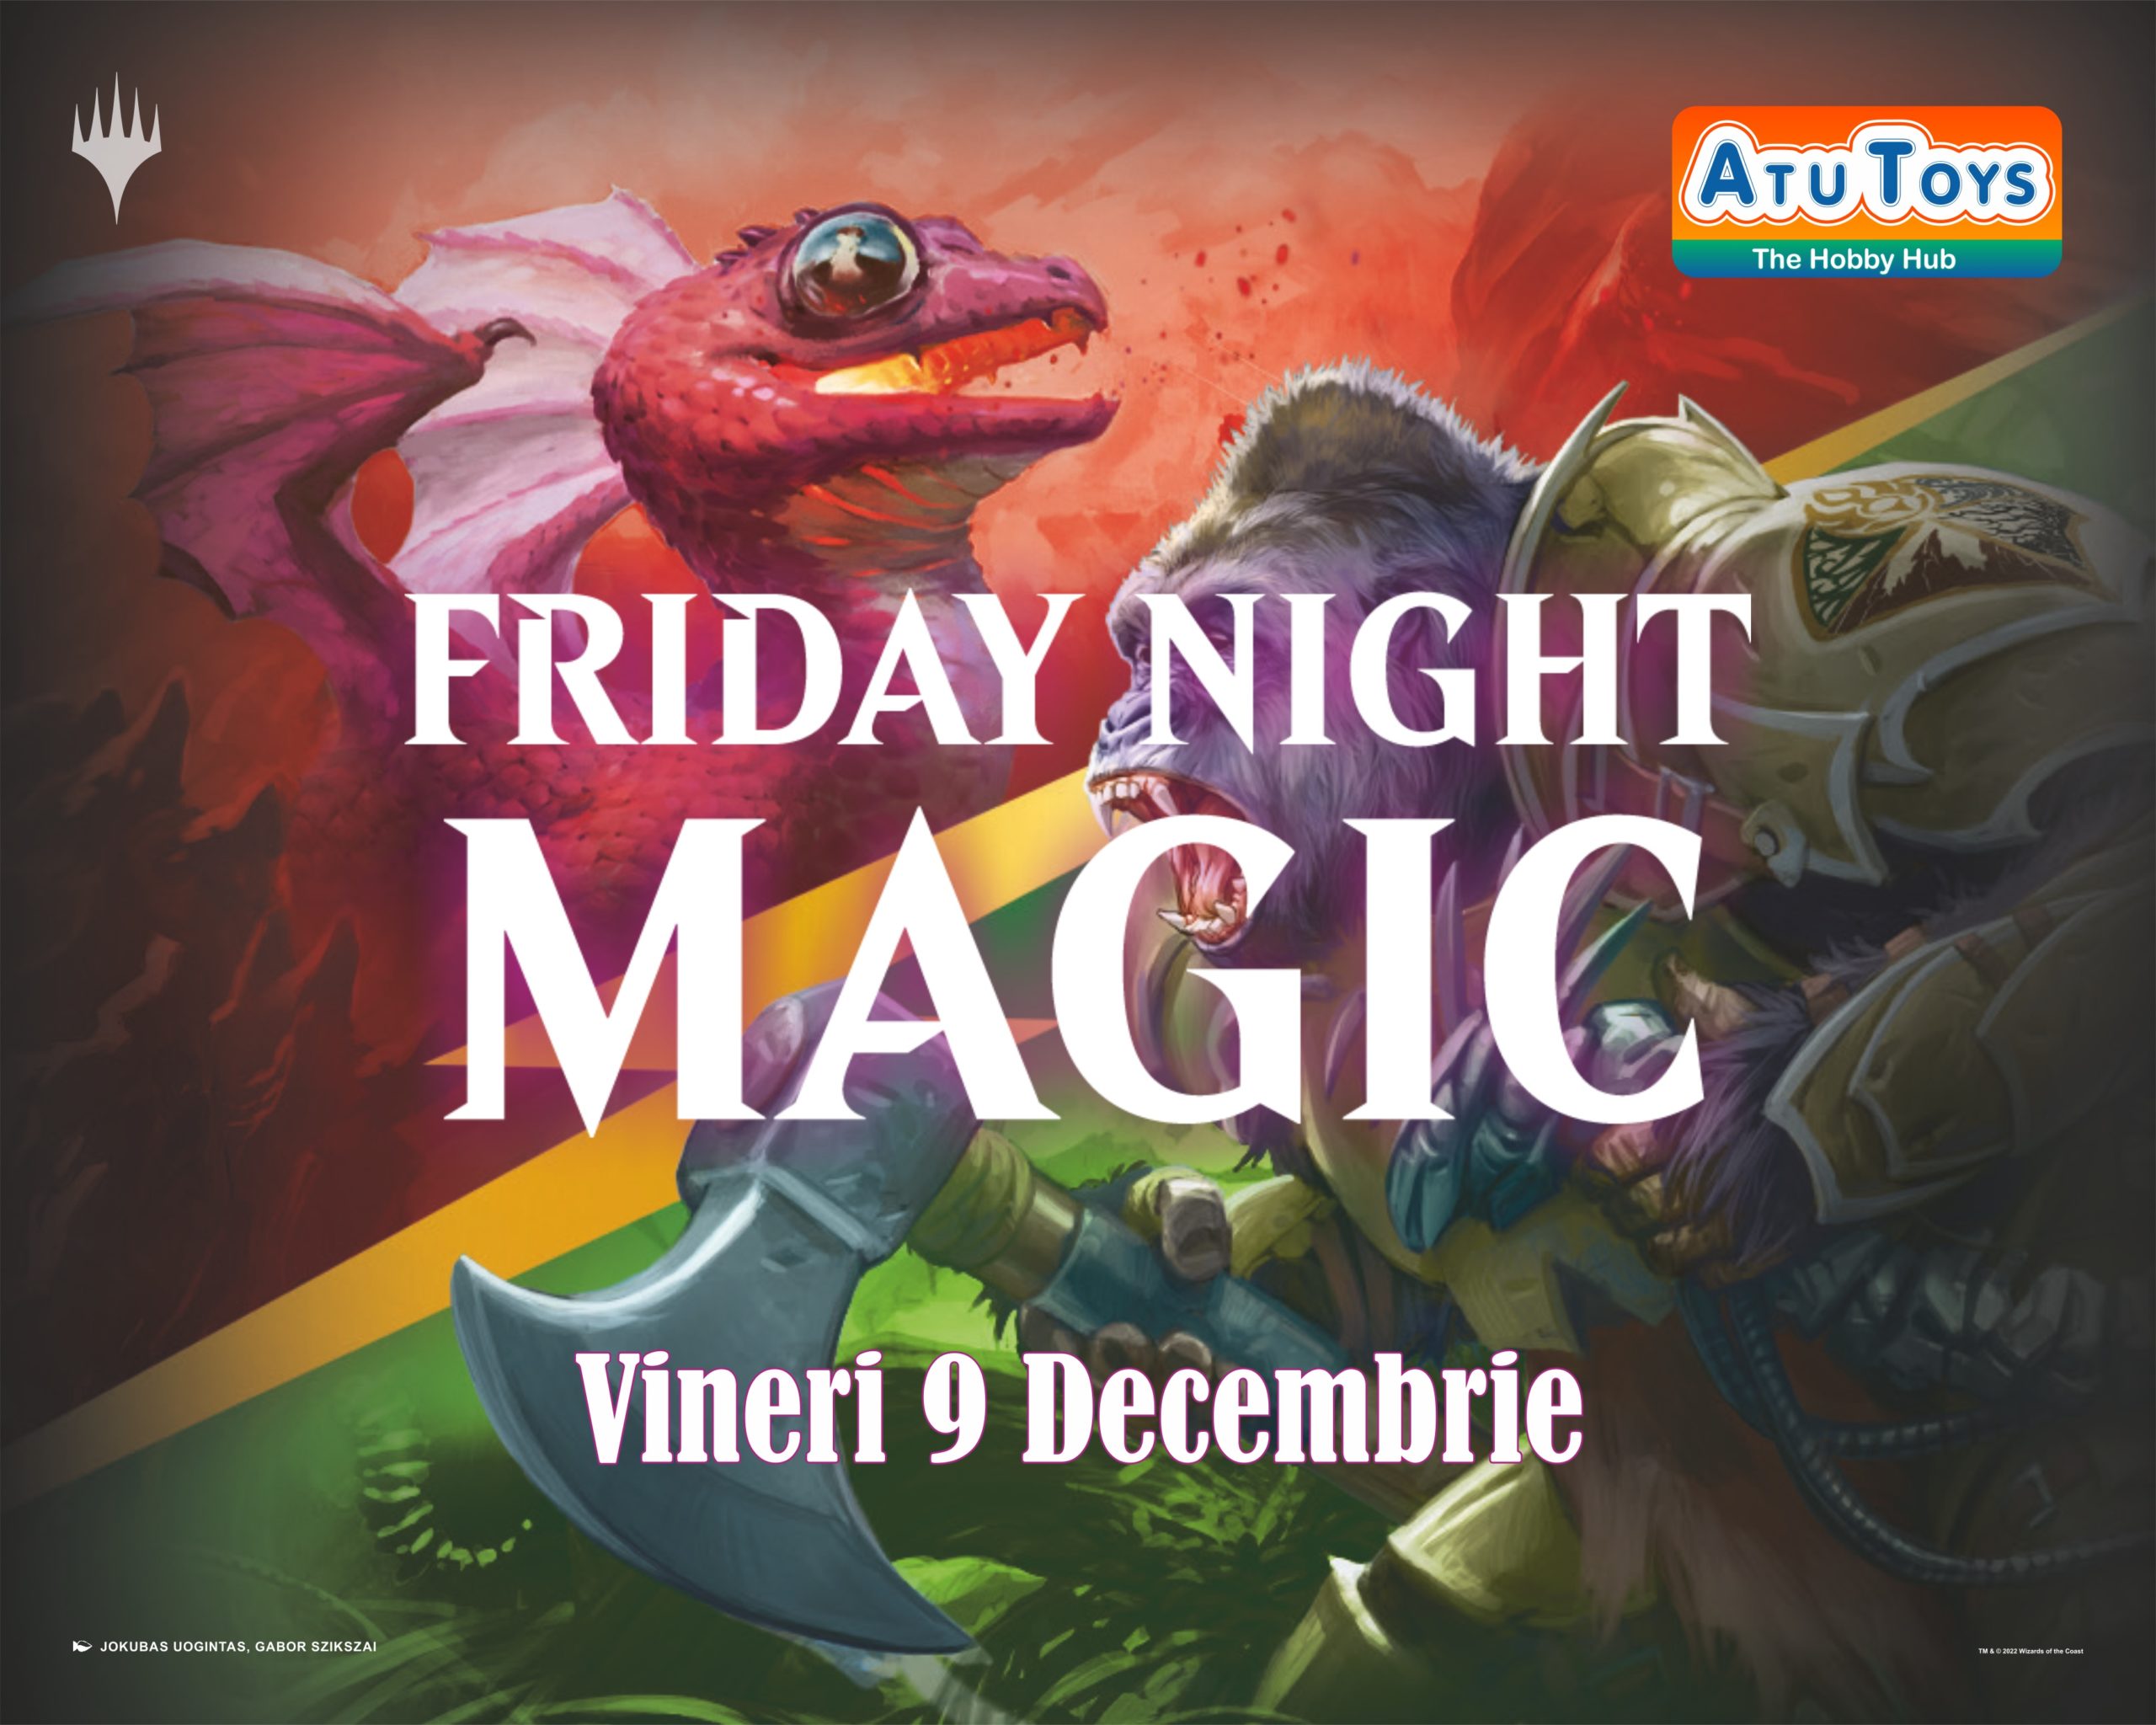 ATU TOYS – Vineri, 9 Decembrie – Friday Night Magic